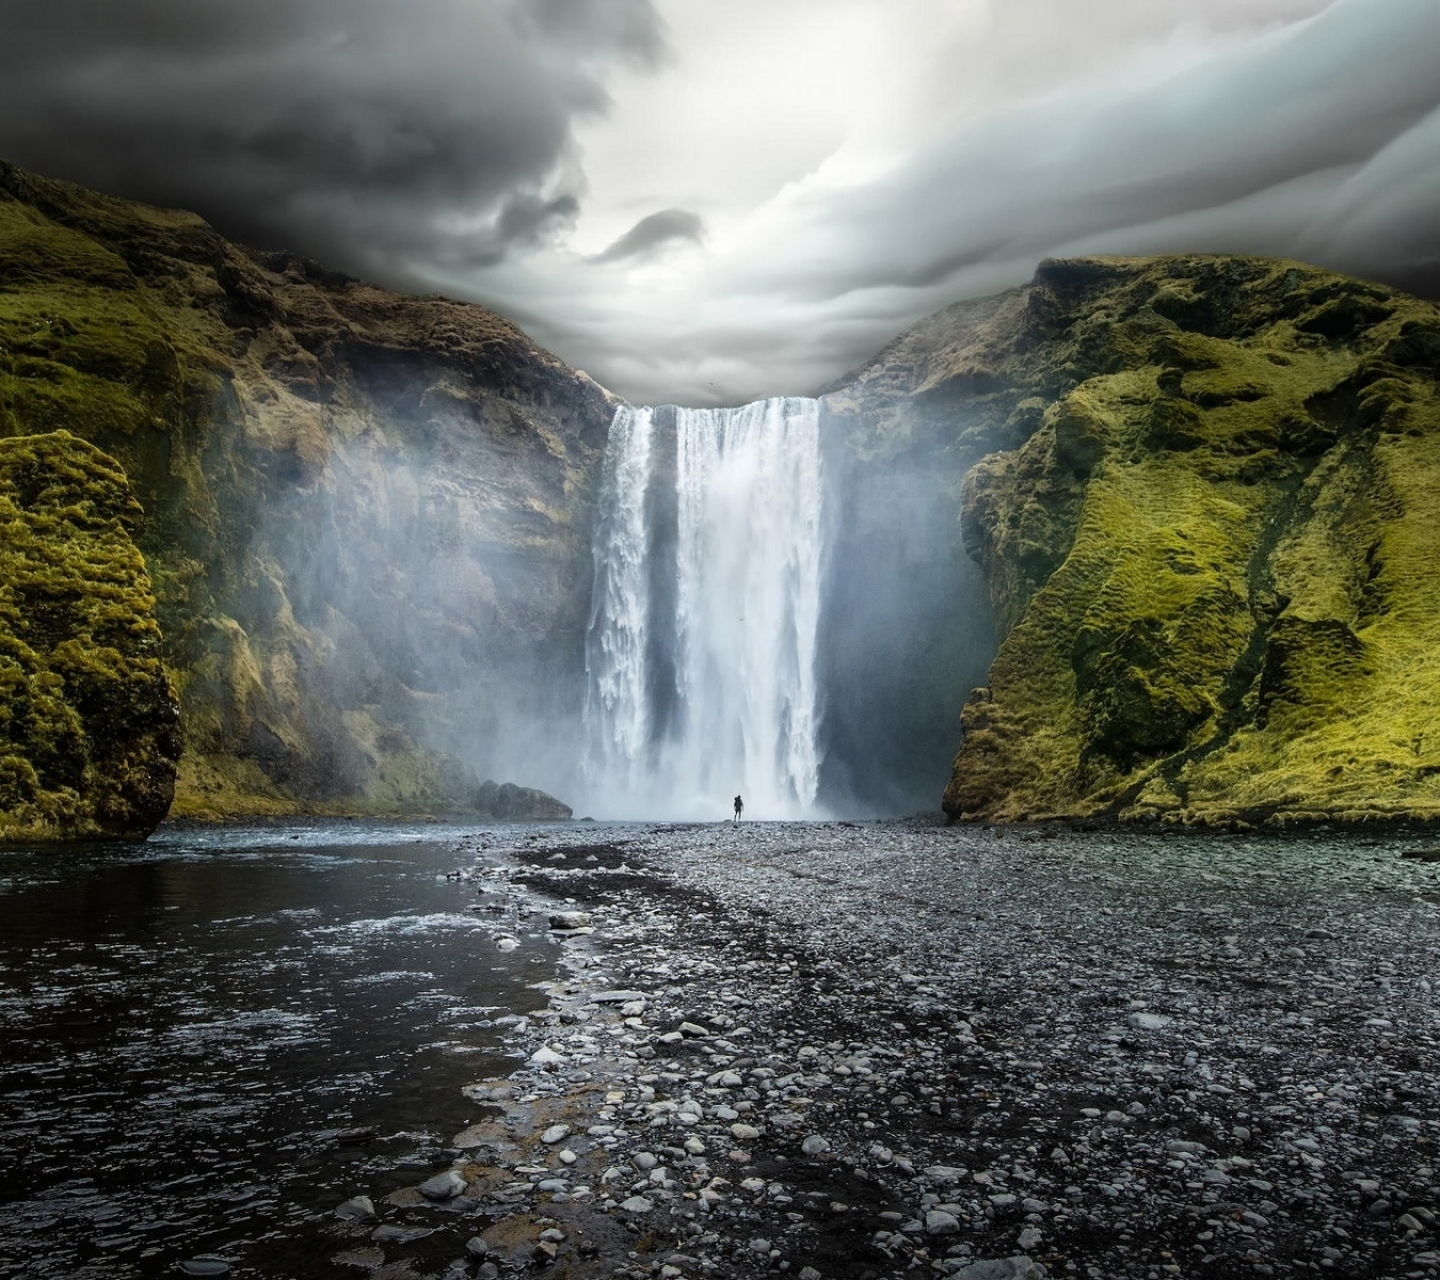 Скачать картинку Облака, Водопады, Водопад, Холм, Облако, Исландия, Земля/природа, Скоугафосс, Водопад Скоугафосс в телефон бесплатно.